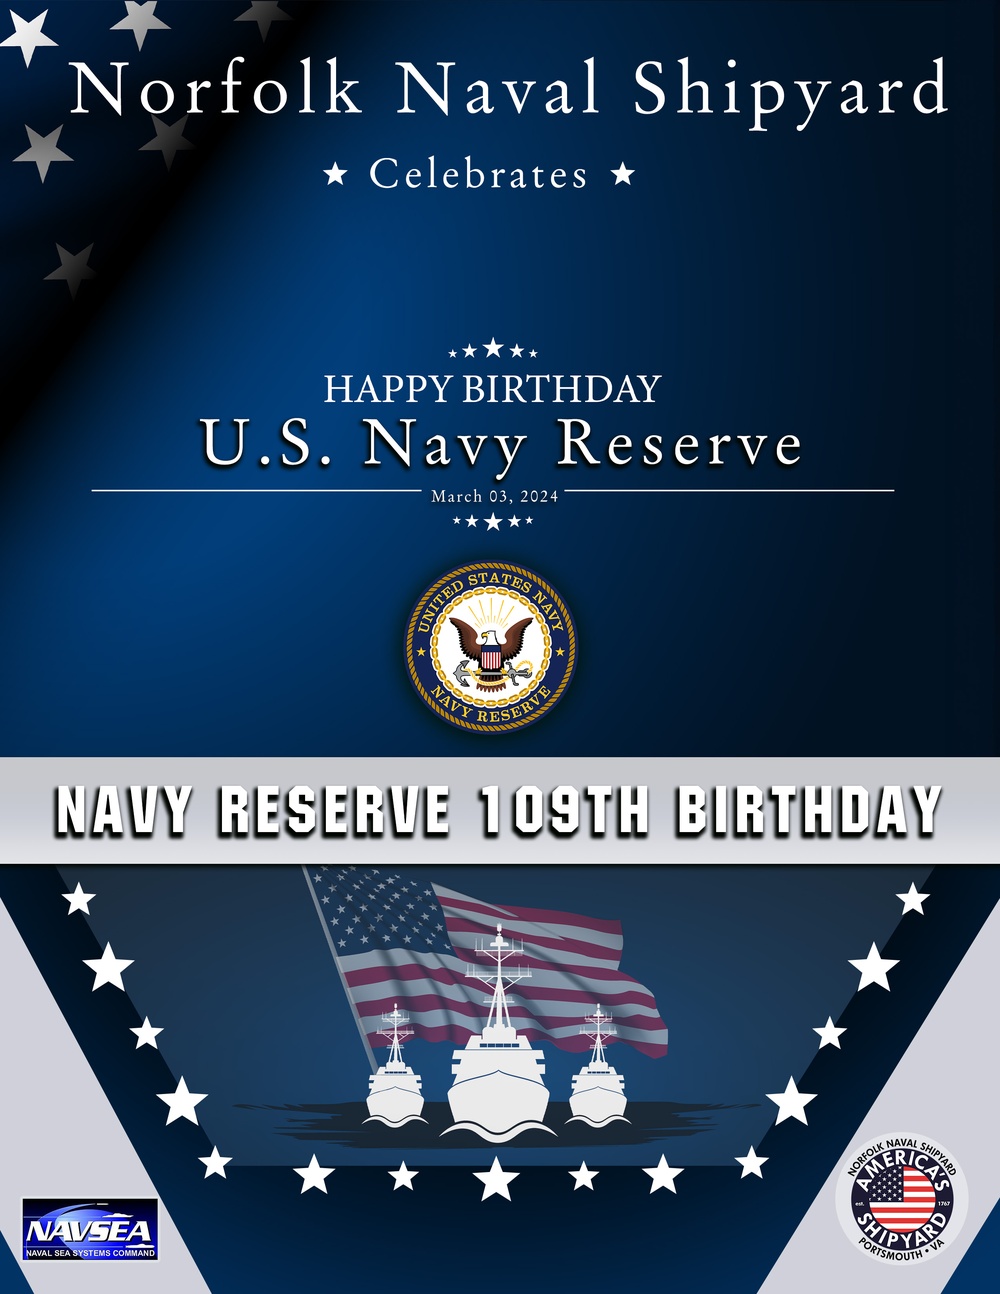 U.S. Navy Reserve birthday